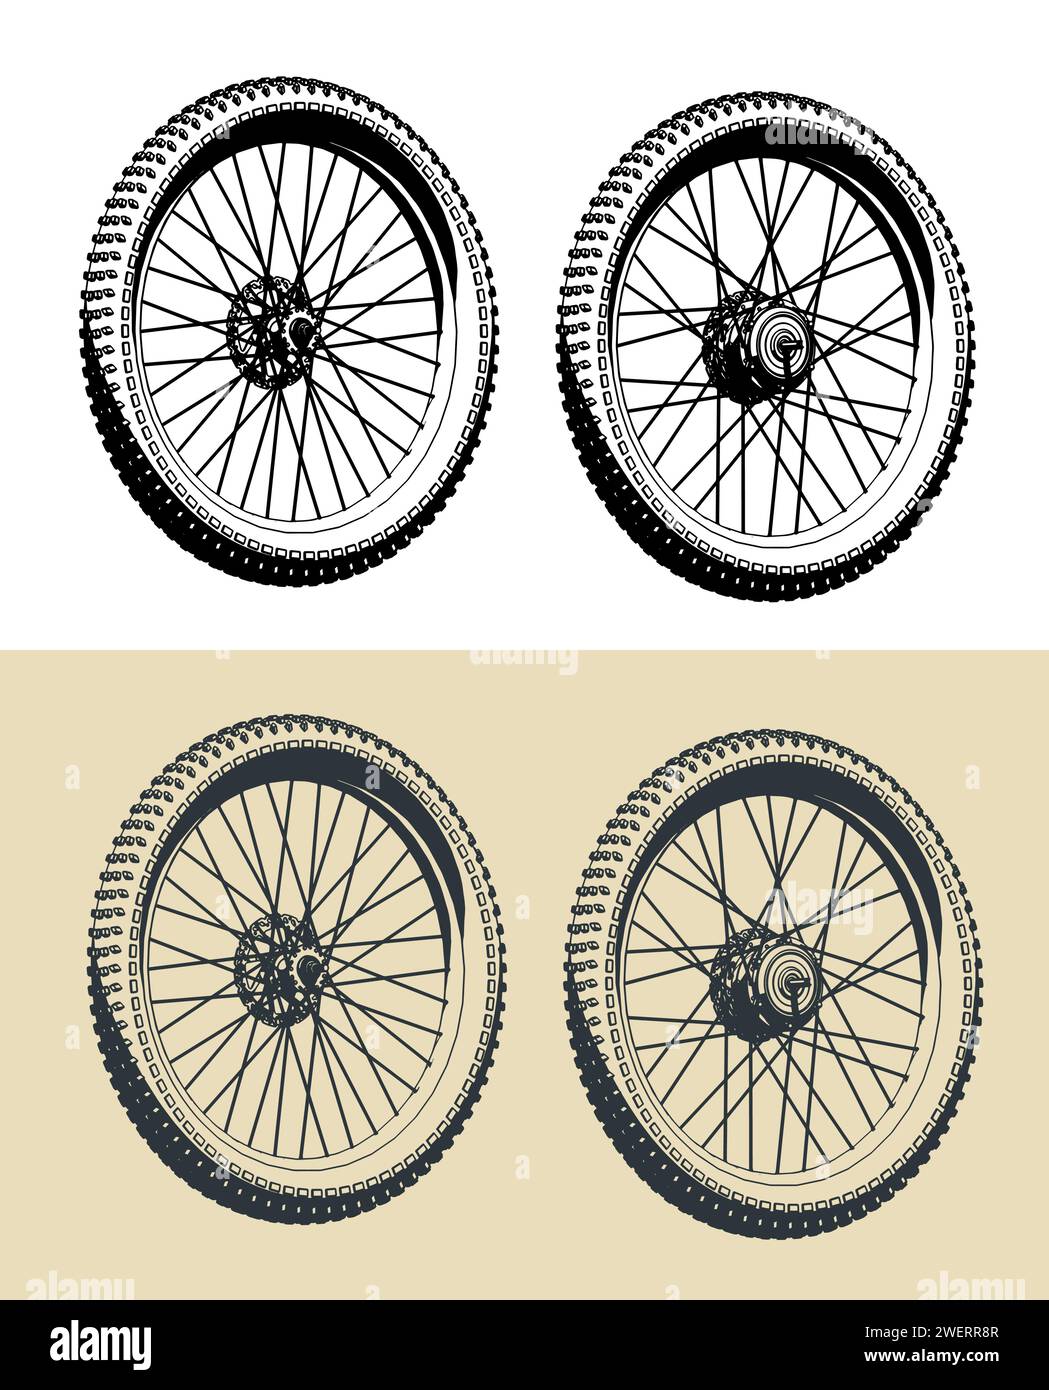 Illustrazioni vettoriali stilizzate delle ruote anteriori e posteriori di una bicicletta Illustrazione Vettoriale